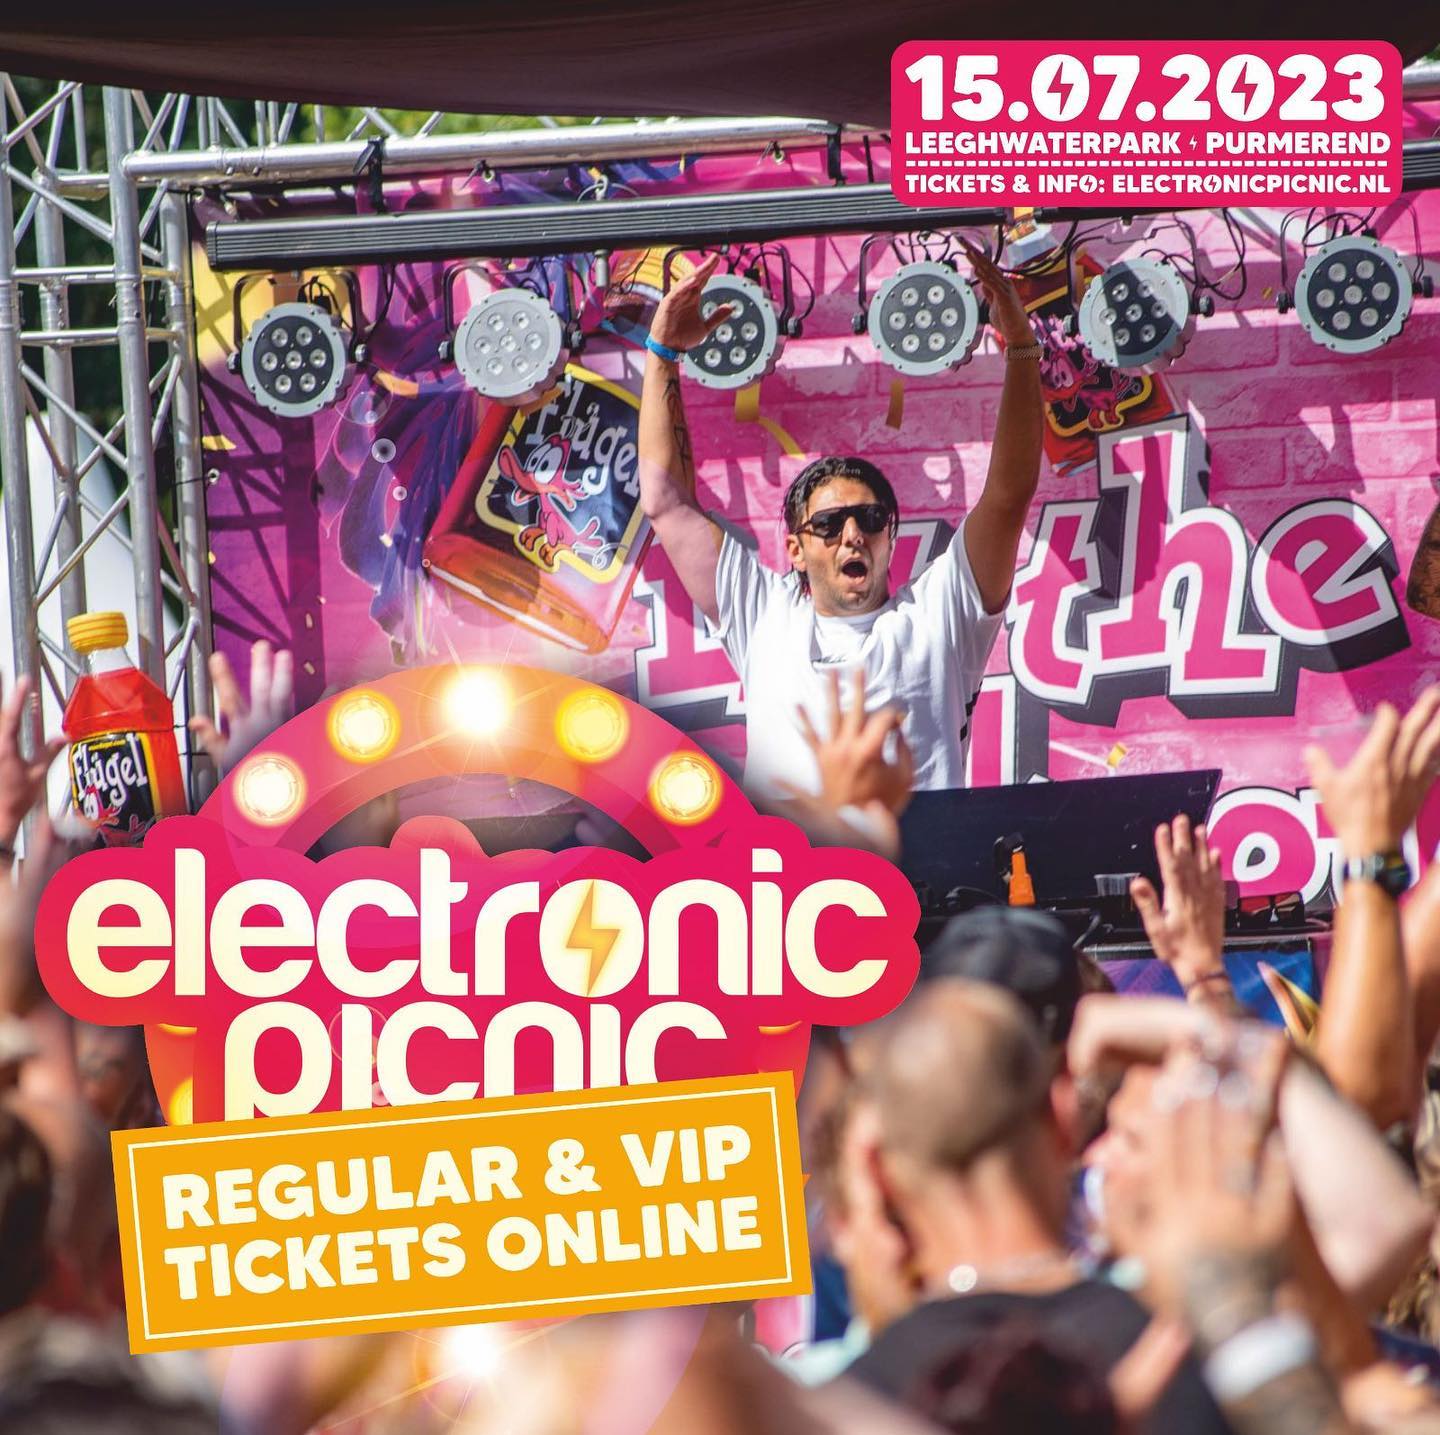 ⚡ 𝐑𝐄𝐆𝐔𝐋𝐀𝐑 & 𝐕𝐈𝐏 𝐓𝐈𝐂𝐊𝐄𝐓𝐒 𝐕𝐄𝐑𝐊𝐑𝐈𝐉𝐆𝐁𝐀𝐀𝐑❣️
Je kunt dit jaar voor het eerst een 𝗩𝗜𝗣 𝘁𝗶𝗰𝗸𝗲𝘁 voor de Electronic Picnic Festival 𝗩𝗜𝗣 𝗘𝘅𝗽𝗲𝗿𝗶𝗲𝗻𝗰𝗲 kopen. Wil je dus extra genieten vanaf het 𝗩𝗜𝗣 𝗣𝗮𝘃𝗶𝗹𝗷𝗼𝗲𝗻❓ 

𝗟𝗲𝗲𝘀 𝗮𝗹𝗹𝗲 𝗶𝗻𝗳𝗼 𝗼𝗽 👇
www.electronicpicnic.nl/vip-tickets #linkinbio